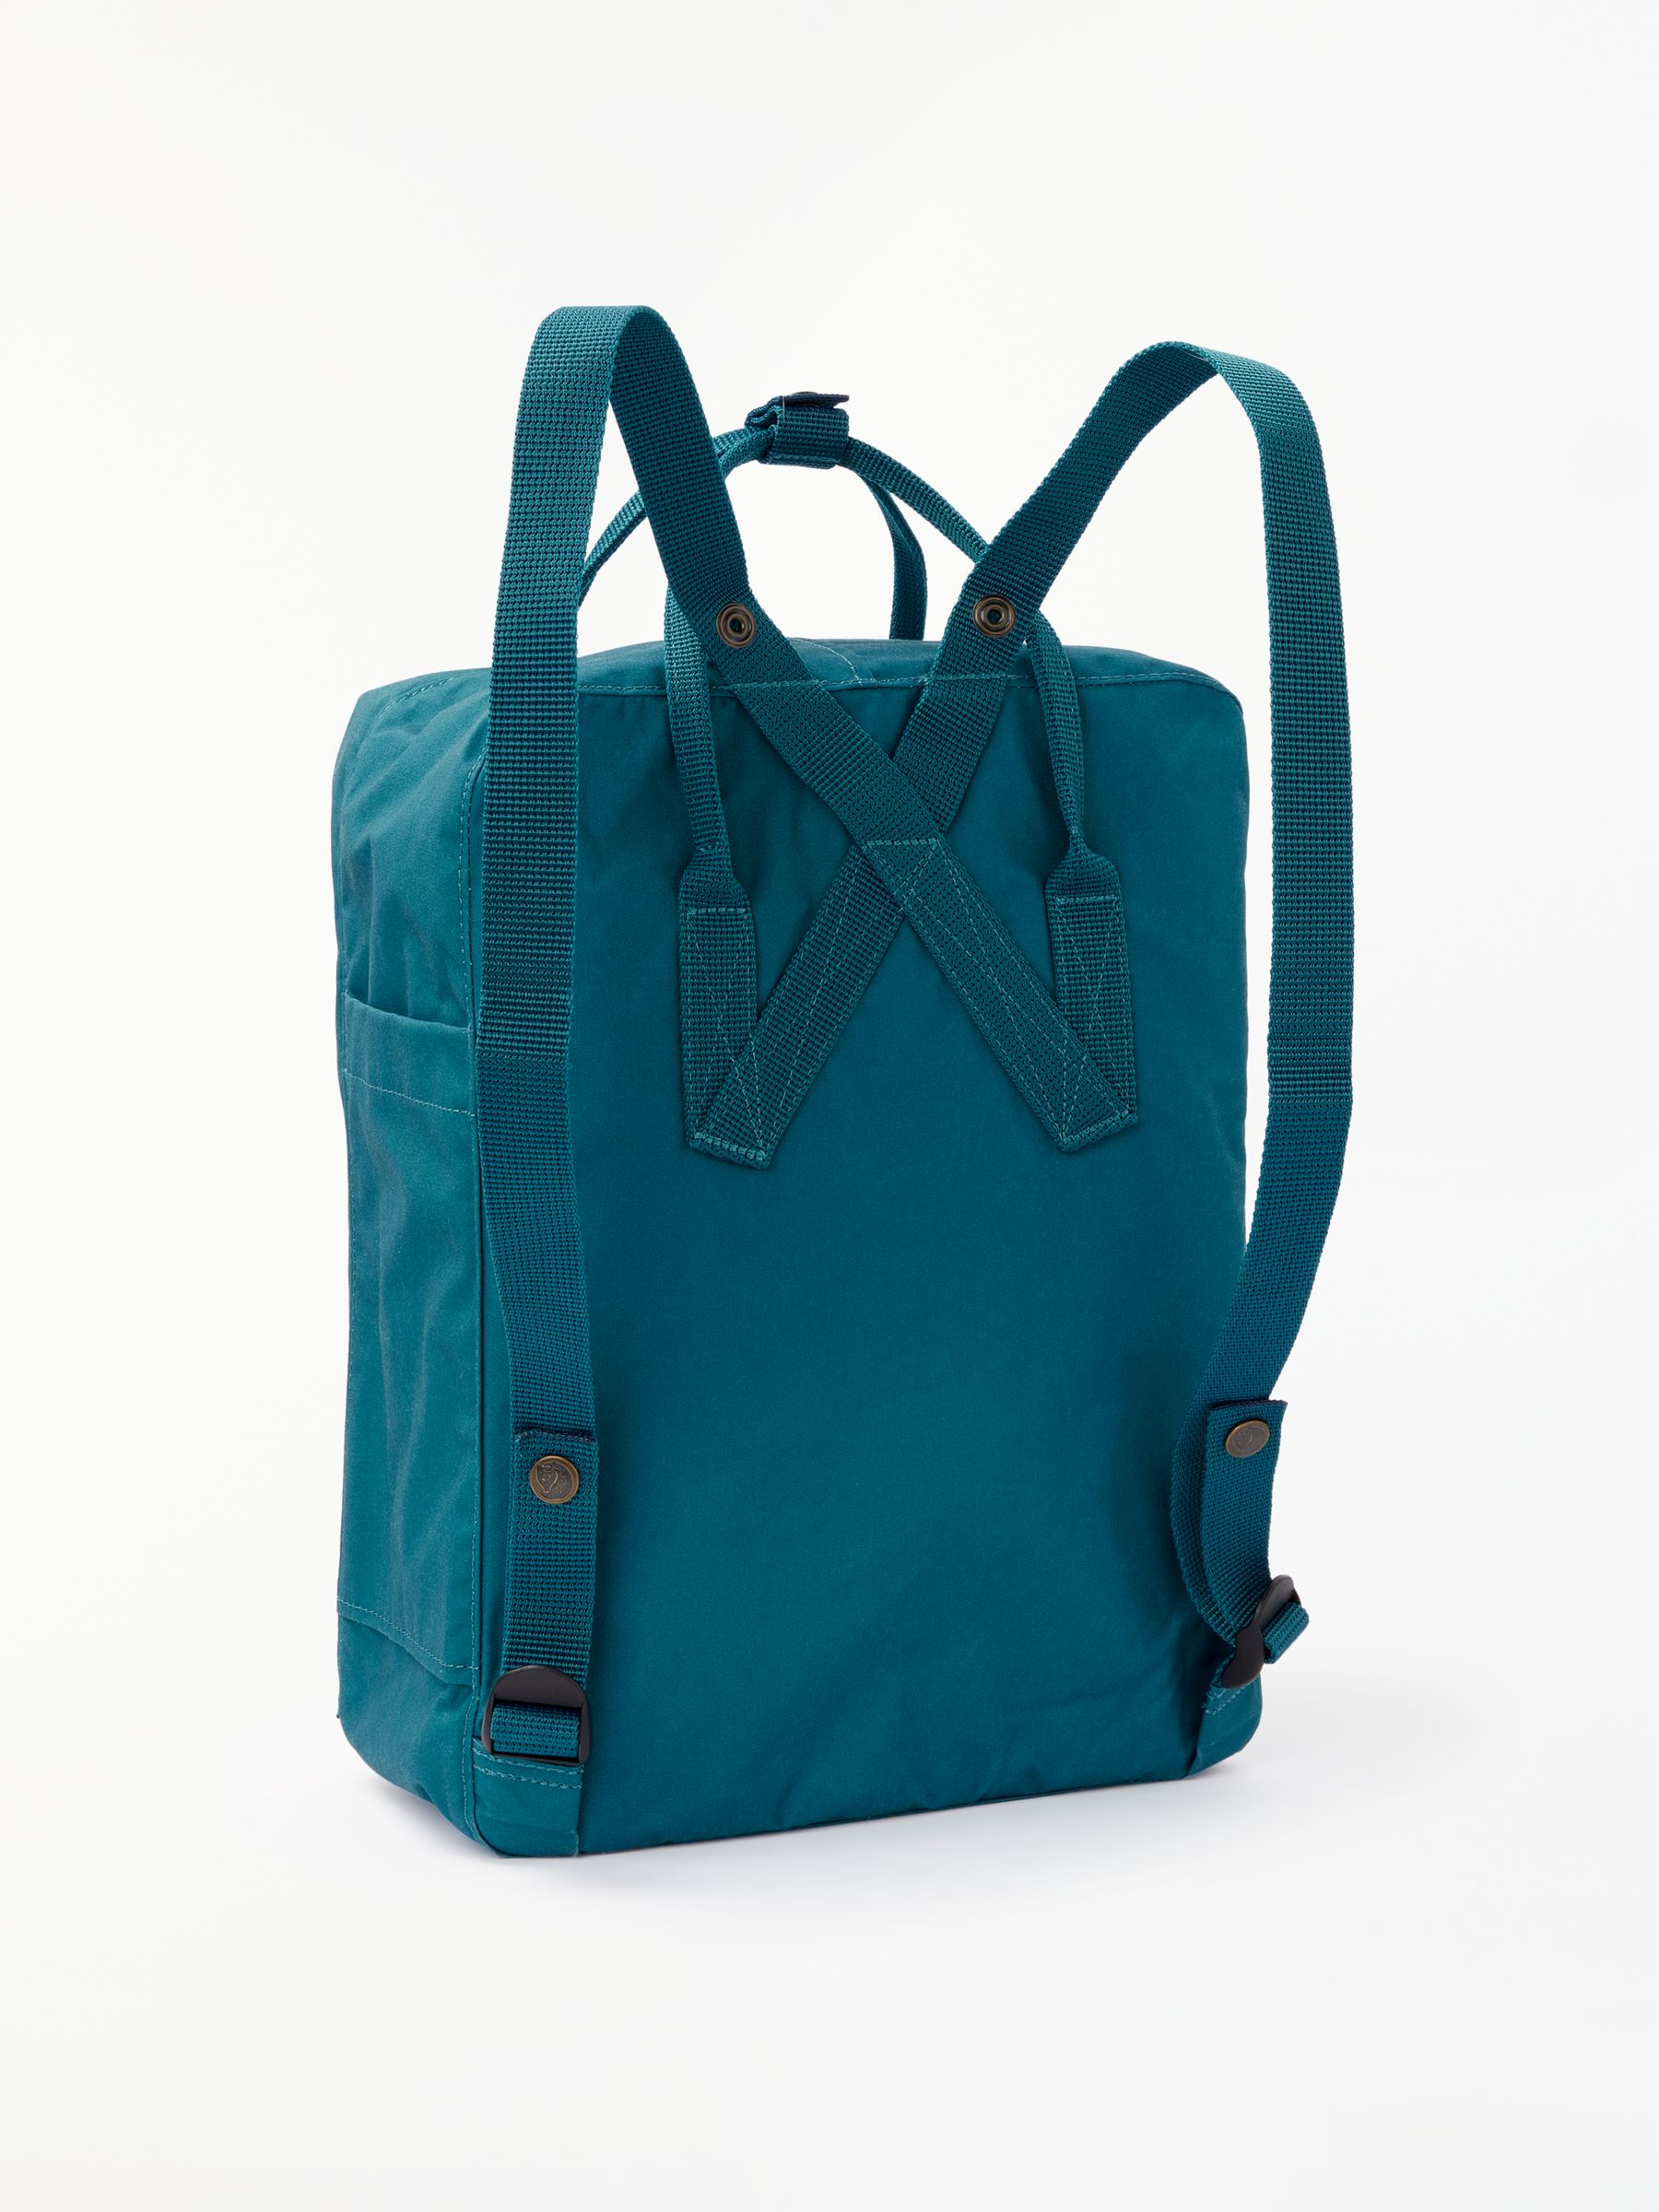 FjÃ¤llrÃ¤ven KÃ¥nken Classic Backpack at John Lewis & Partners